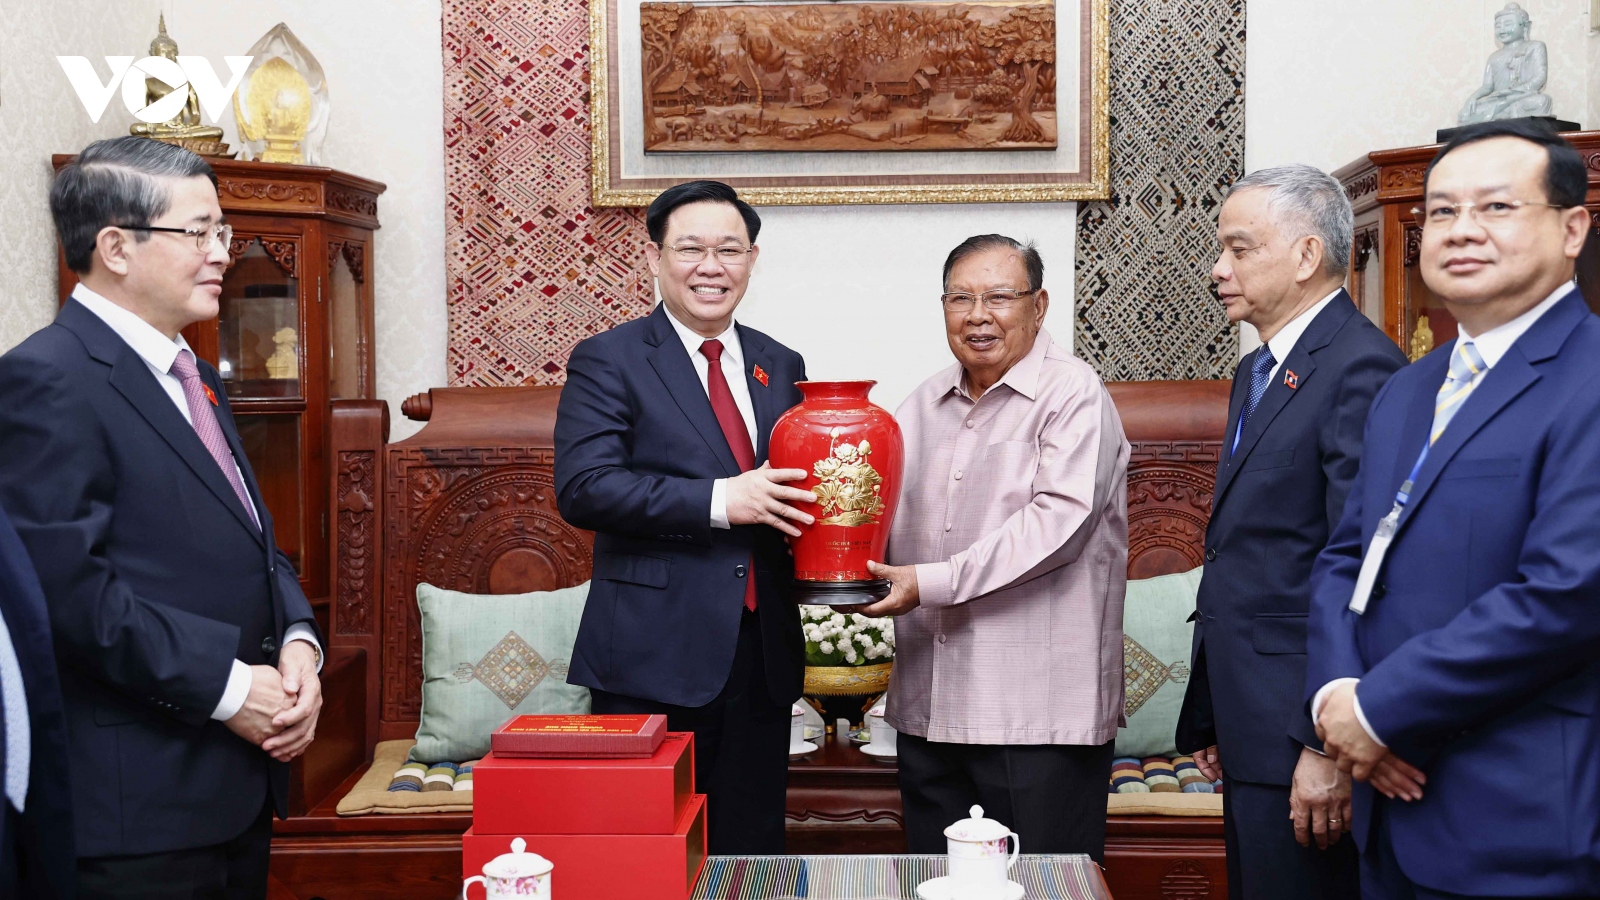 Toàn cảnh chuyến thăm chính thức CHDCND Lào của Chủ tịch Quốc hội Vương Đình Huệ